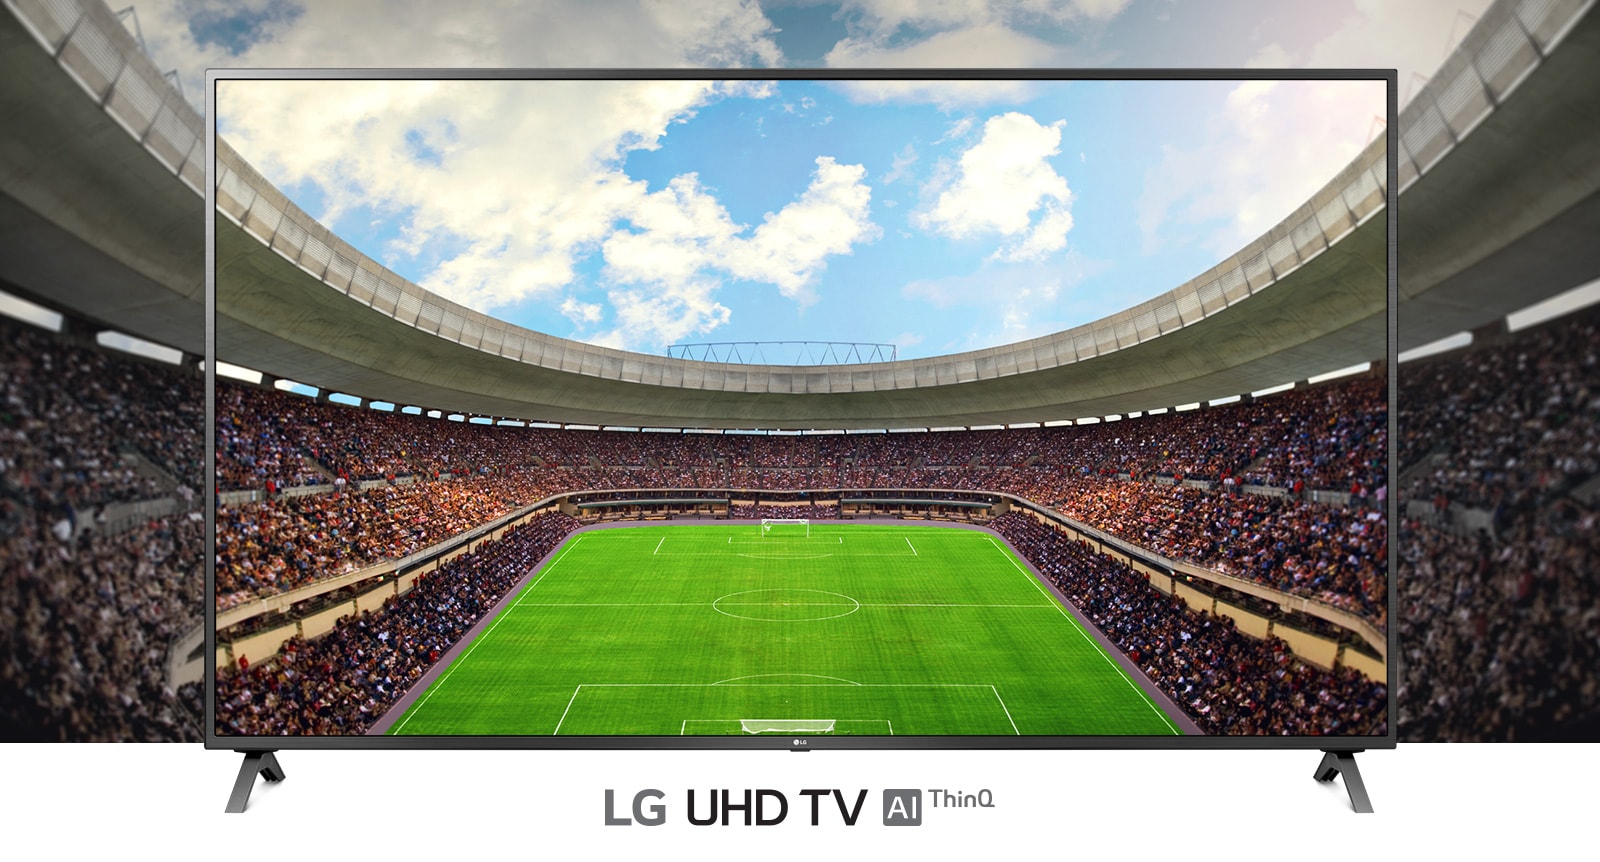 En panoramautsikt över fotbollsarenan fylld med åskådare som visas i en TV-ram.